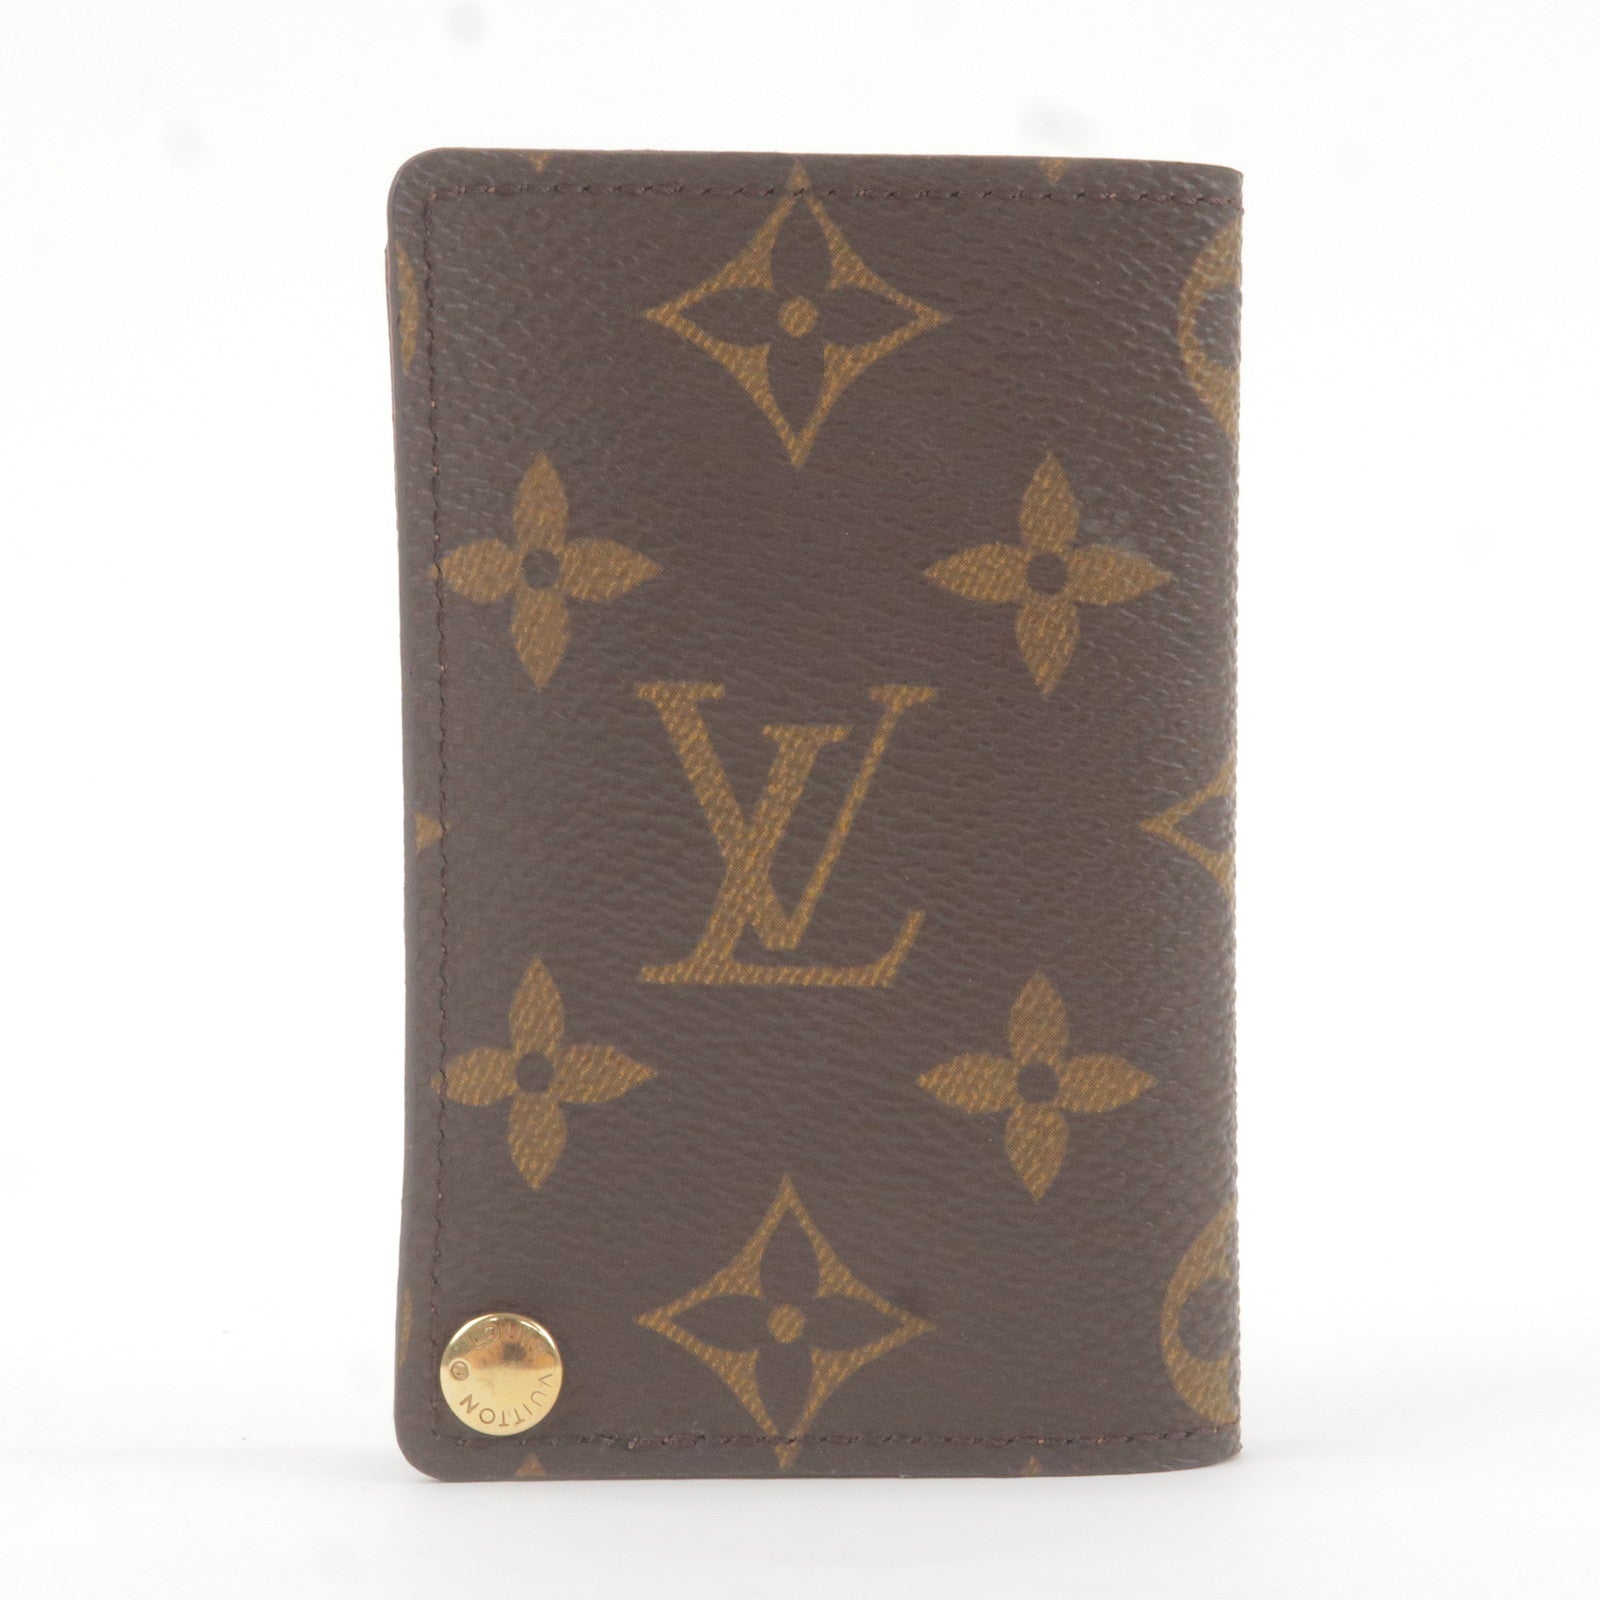 Louis Vuitton Monogram Porte Cartes Credit Card Case